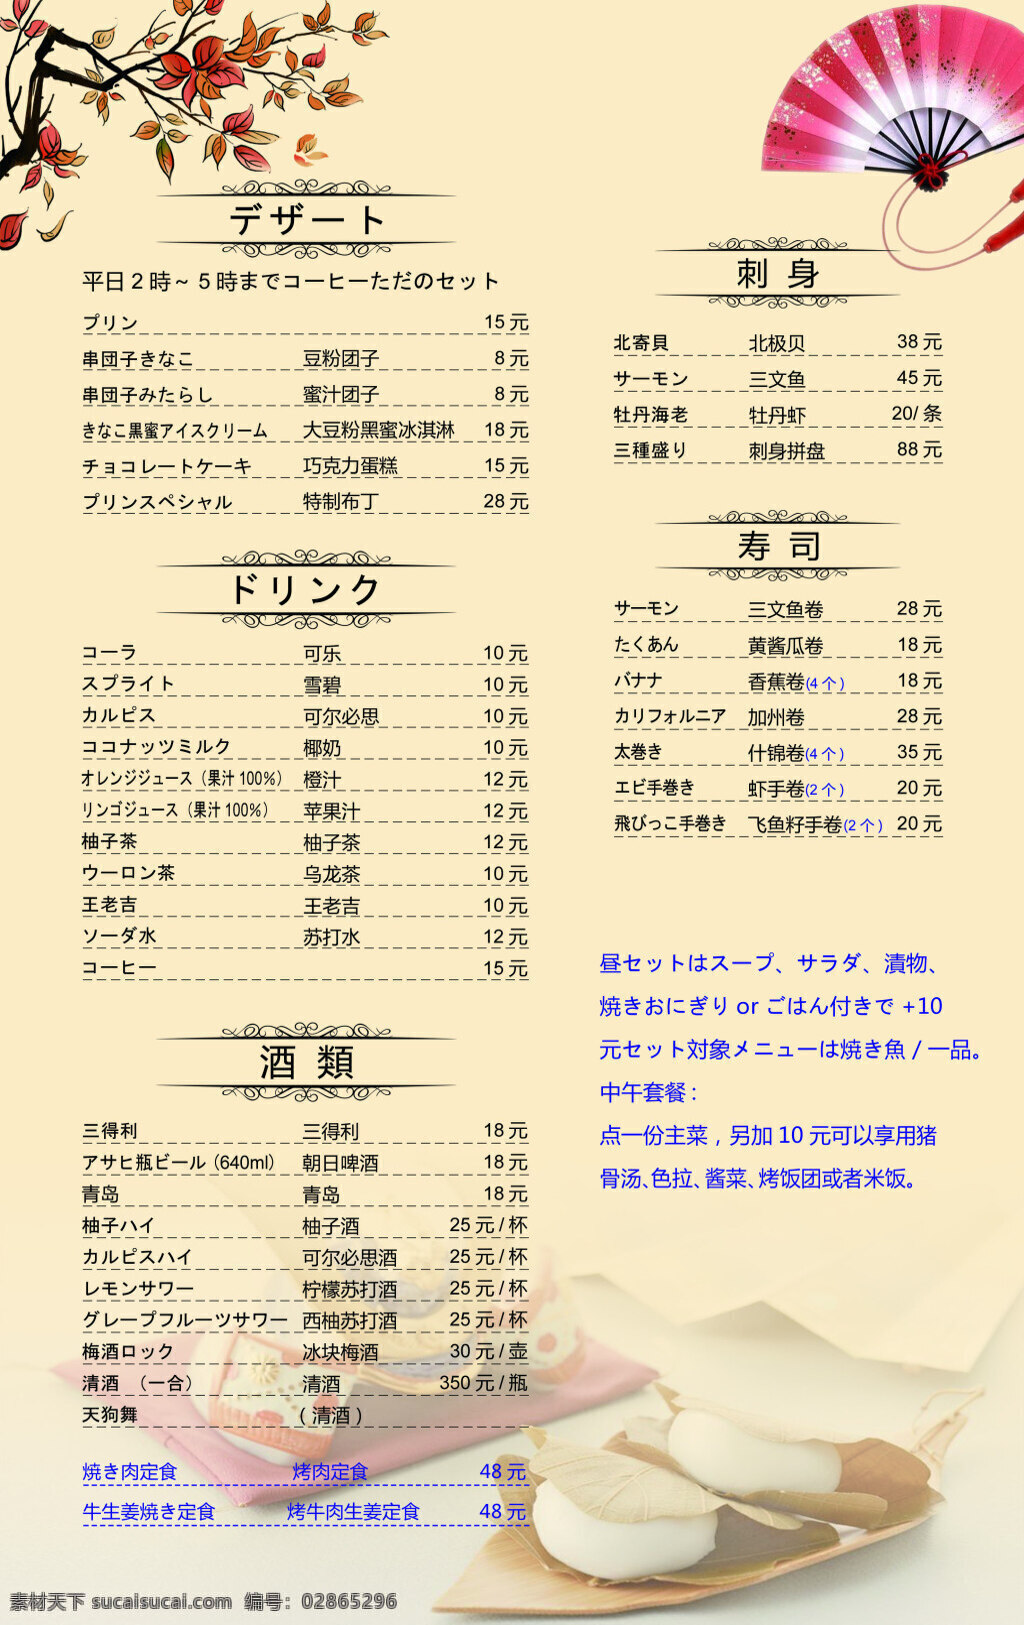 日本料理 菜单 价格表 日本 料理 菜单价格表 白色